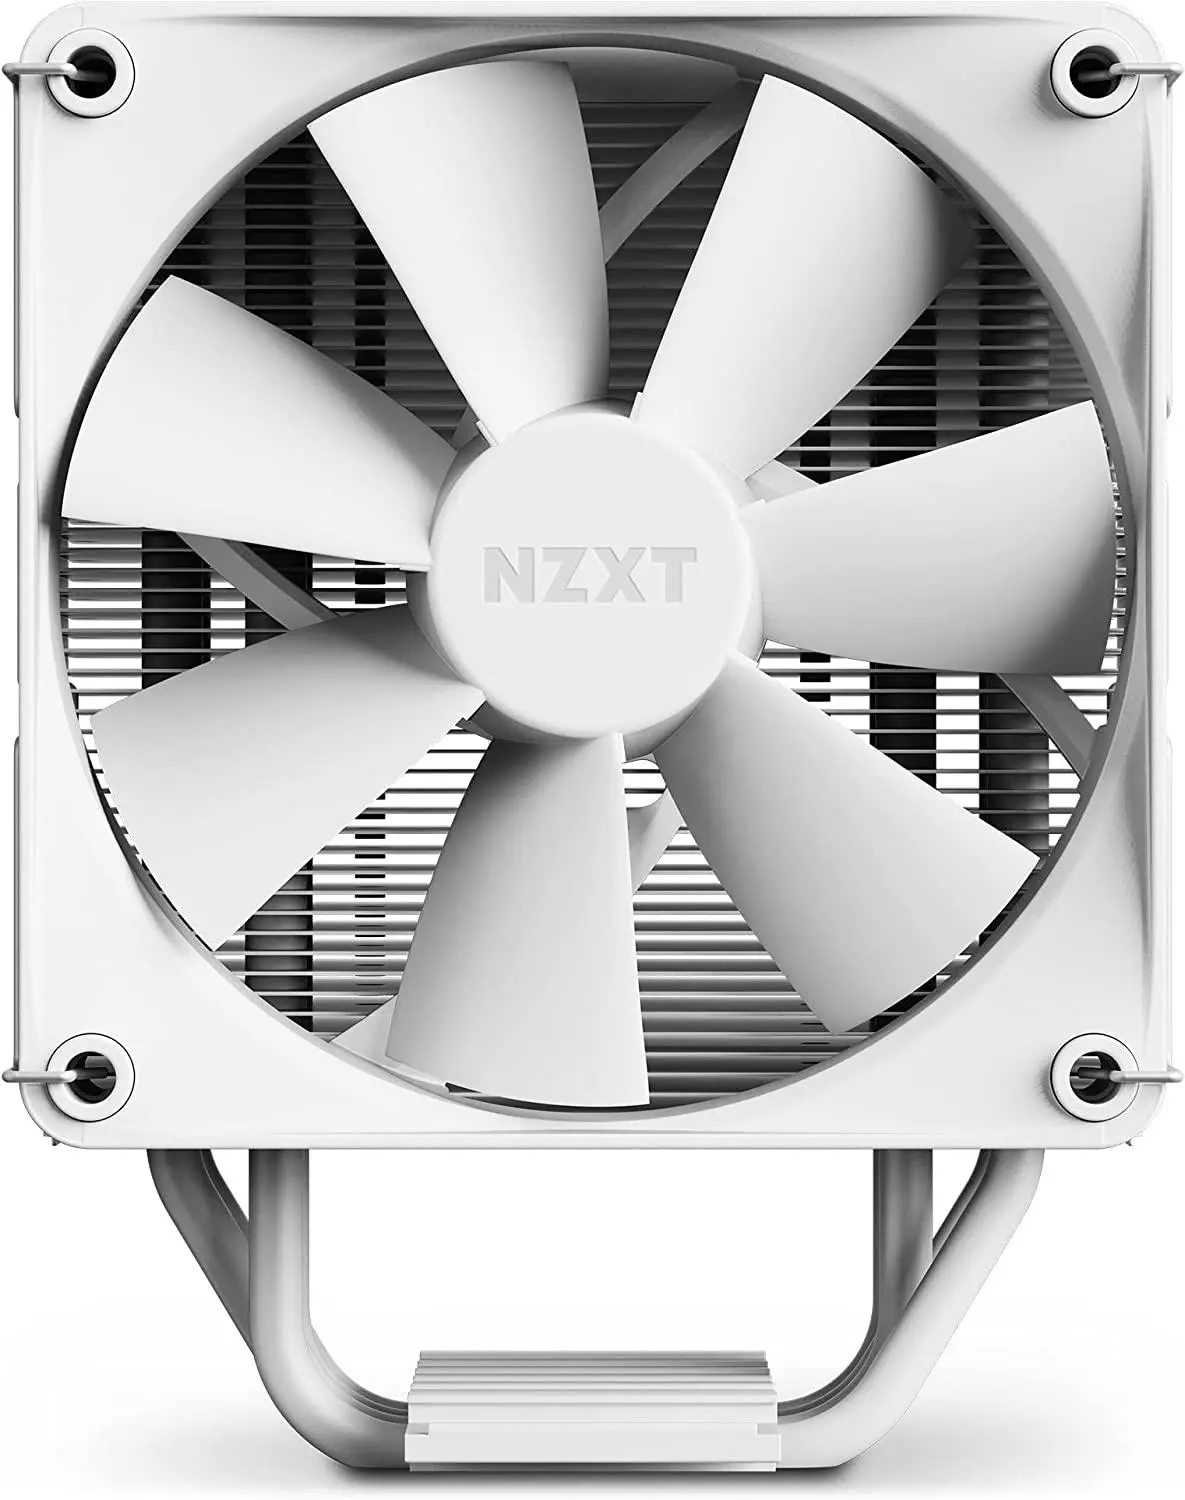 Охладител за процесор NZXT T120 - Бял RC-TN120-B1 AMD/Intel - image 3